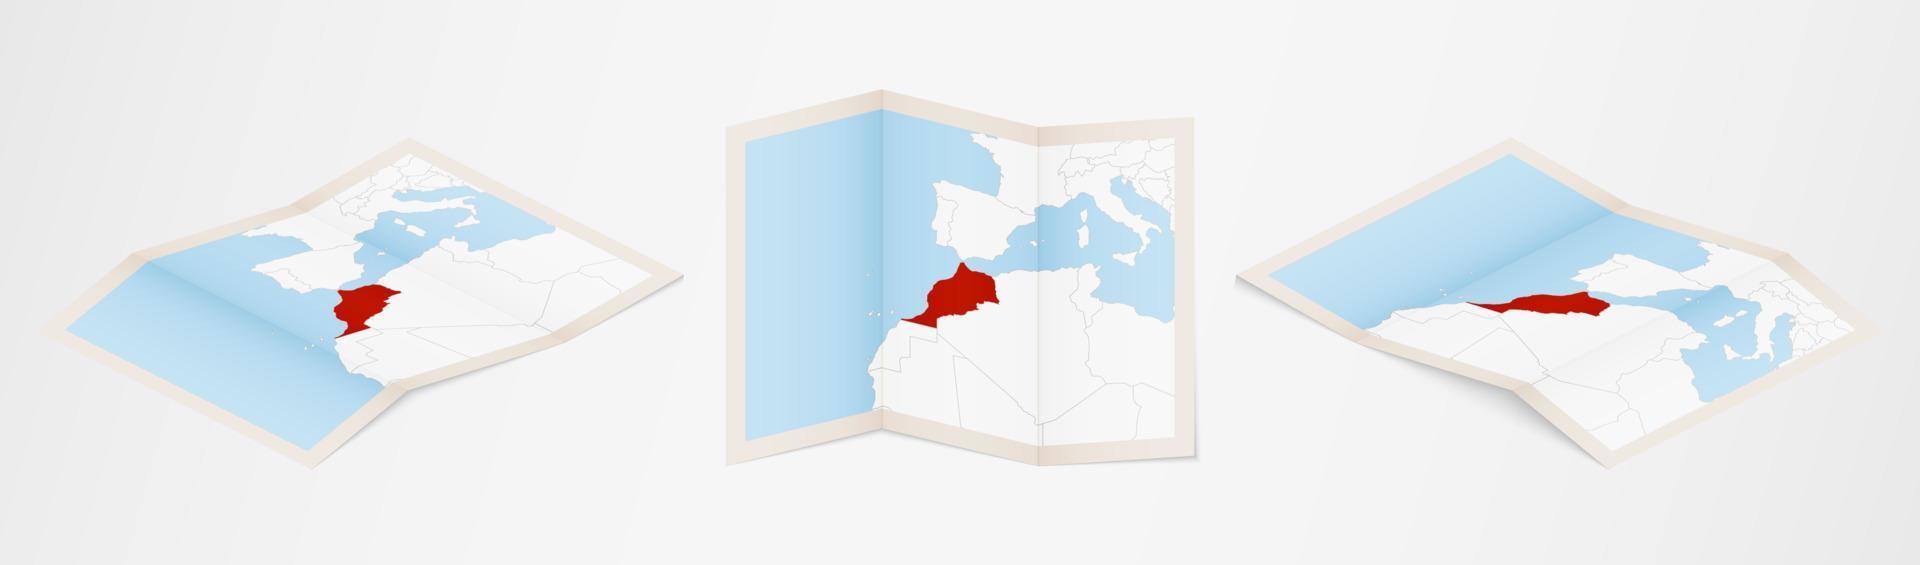 Faltkarte von Marokko in drei verschiedenen Versionen. vektor